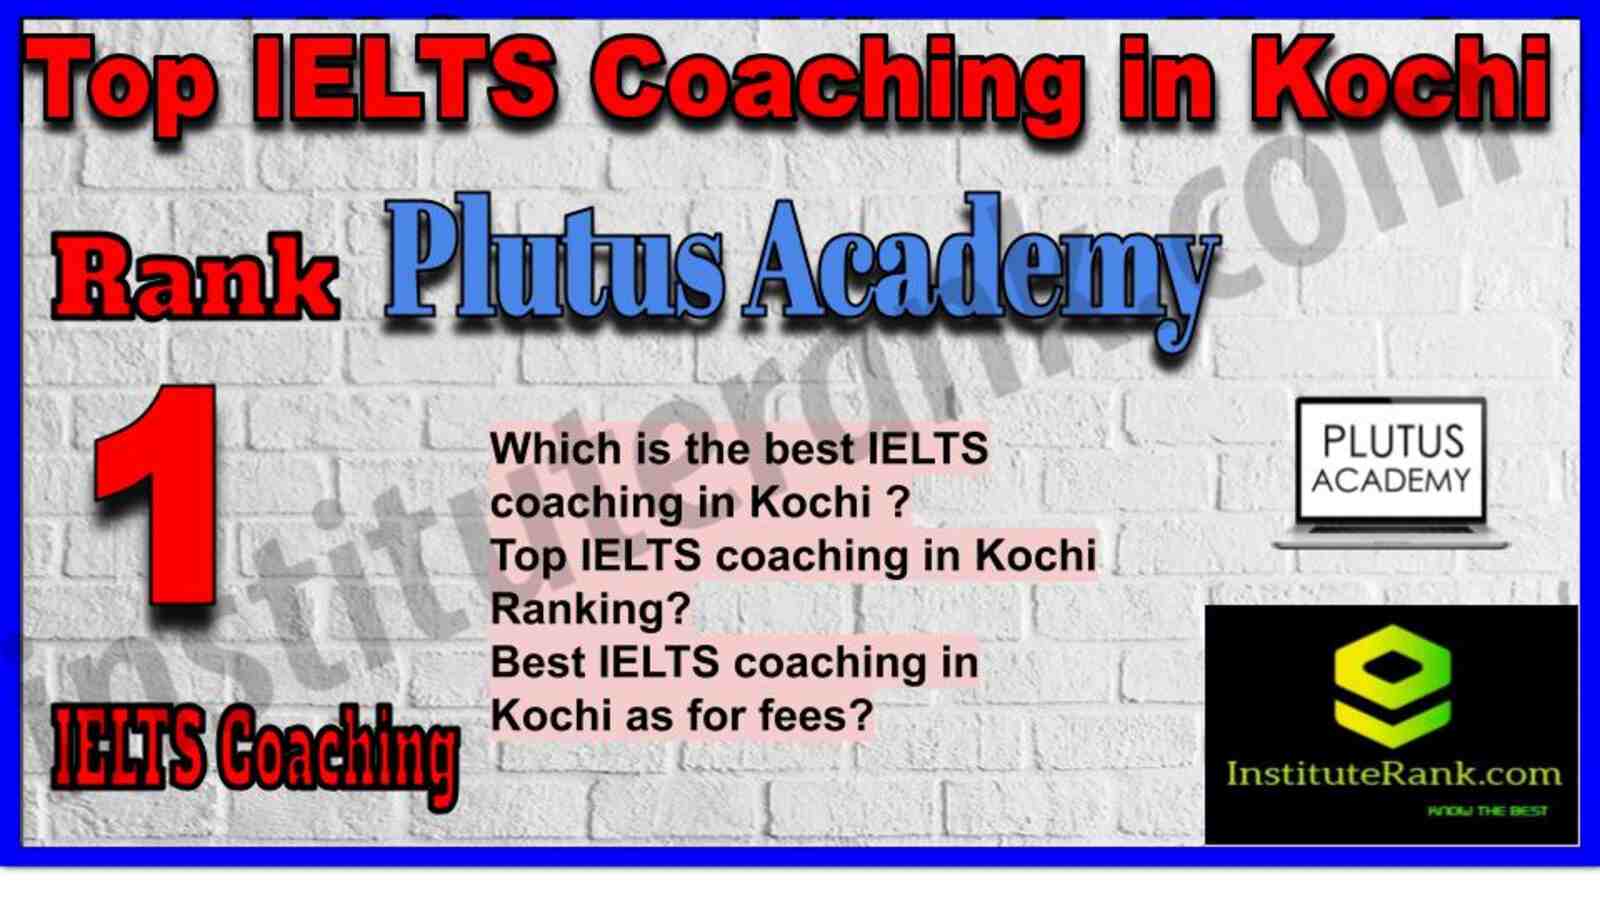 Rank 1. Plutus Academy | Best IELTS Coaching in Kochi